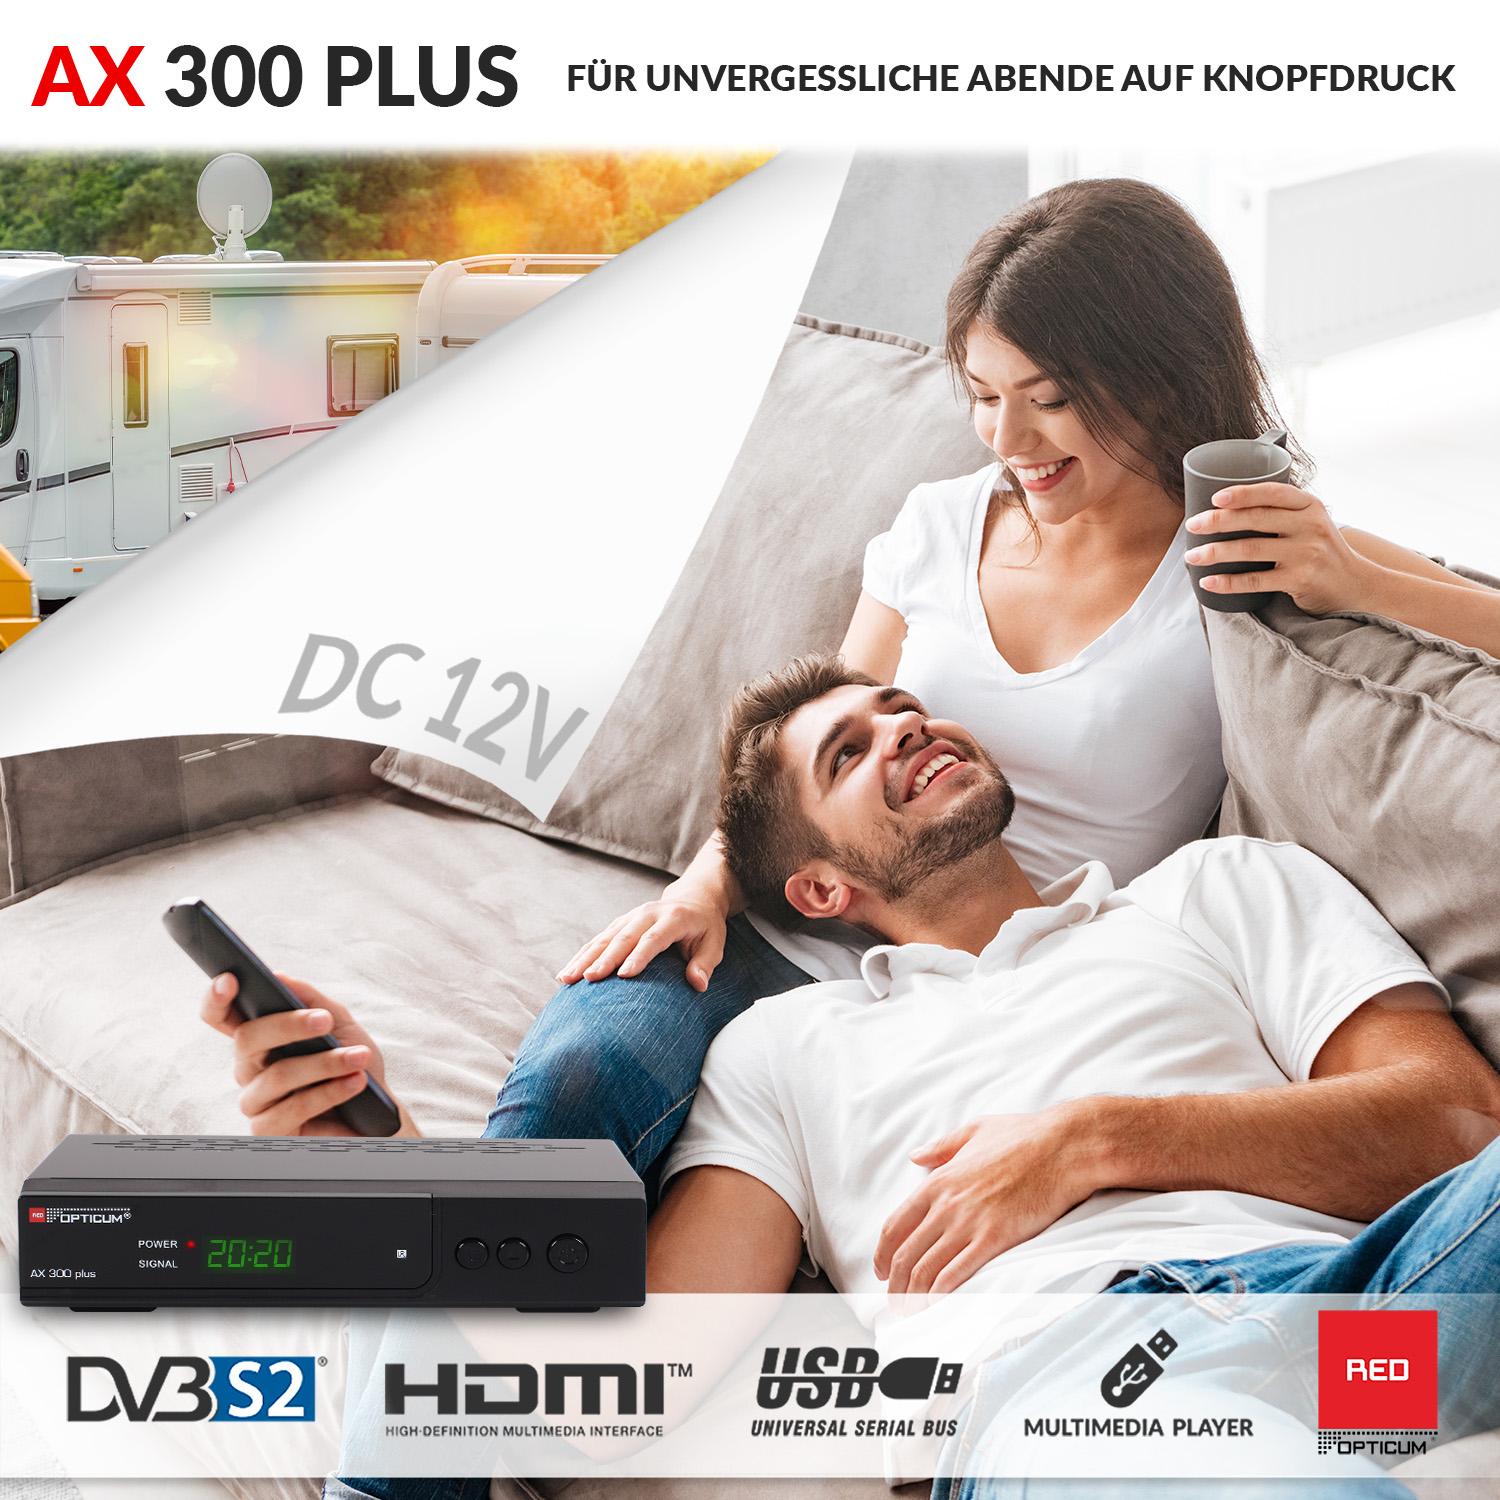 HD DVB-S PVR-Funktion, Sat - Digitaler schwarz) Plus OPTICUM Satelliten-Receiver RED USB-schwarz DVB-S, 1080p Receiver mit DVB-S2, 300 HD Receiver AX -HDMI-SCART (HDTV, PVR I